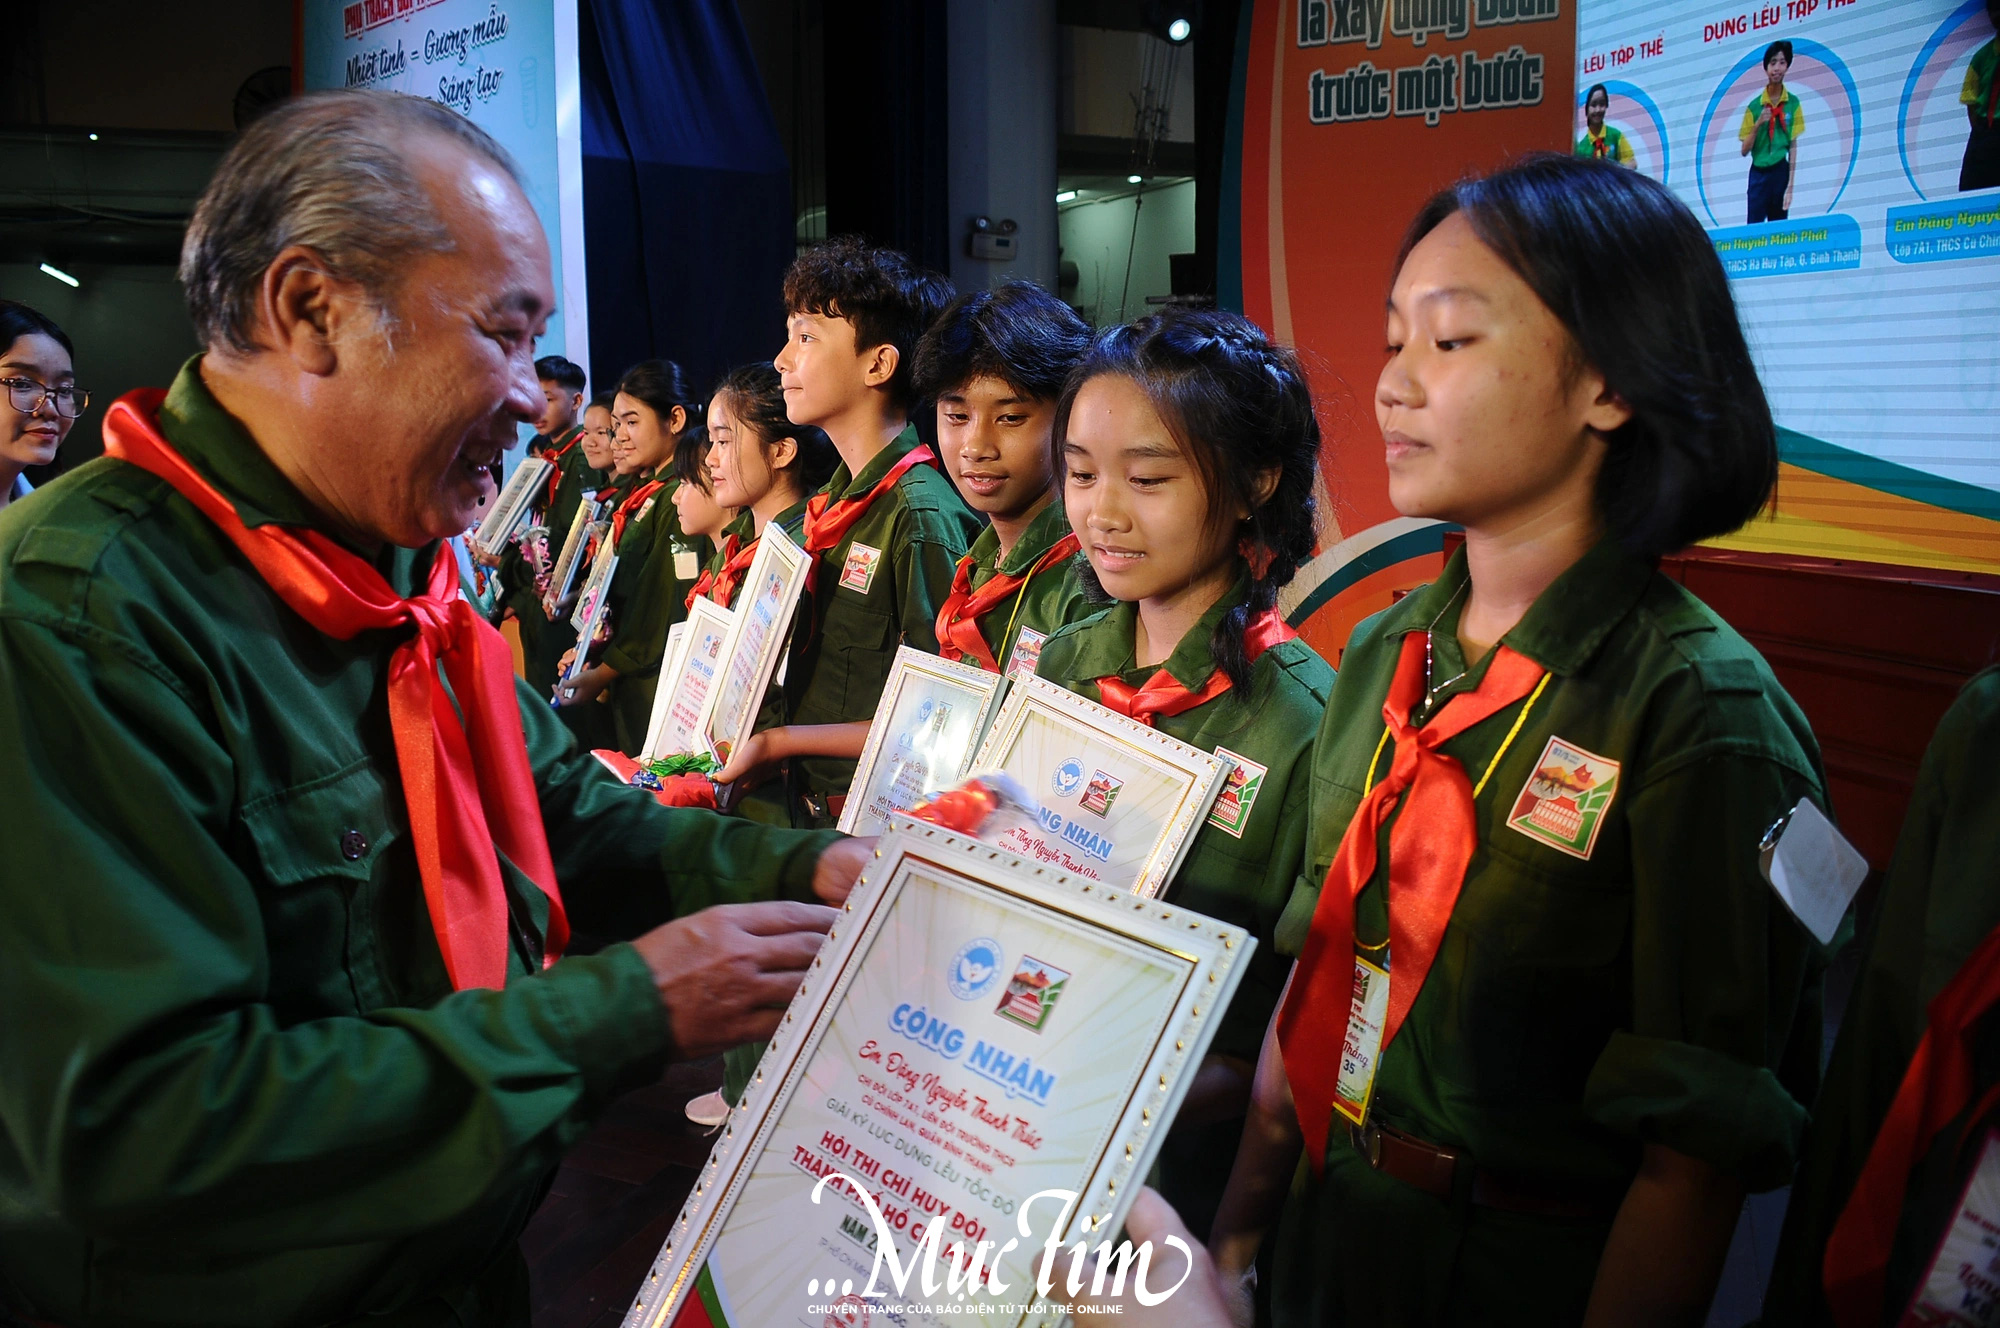 Anh Phạm Ngọc Tuyền (gíam đốc Nhà thiếu nhi Đội TP.HCM) trao thưởng cho các bạn trại sinh. Ảnh: NGUYỄN HƯNG